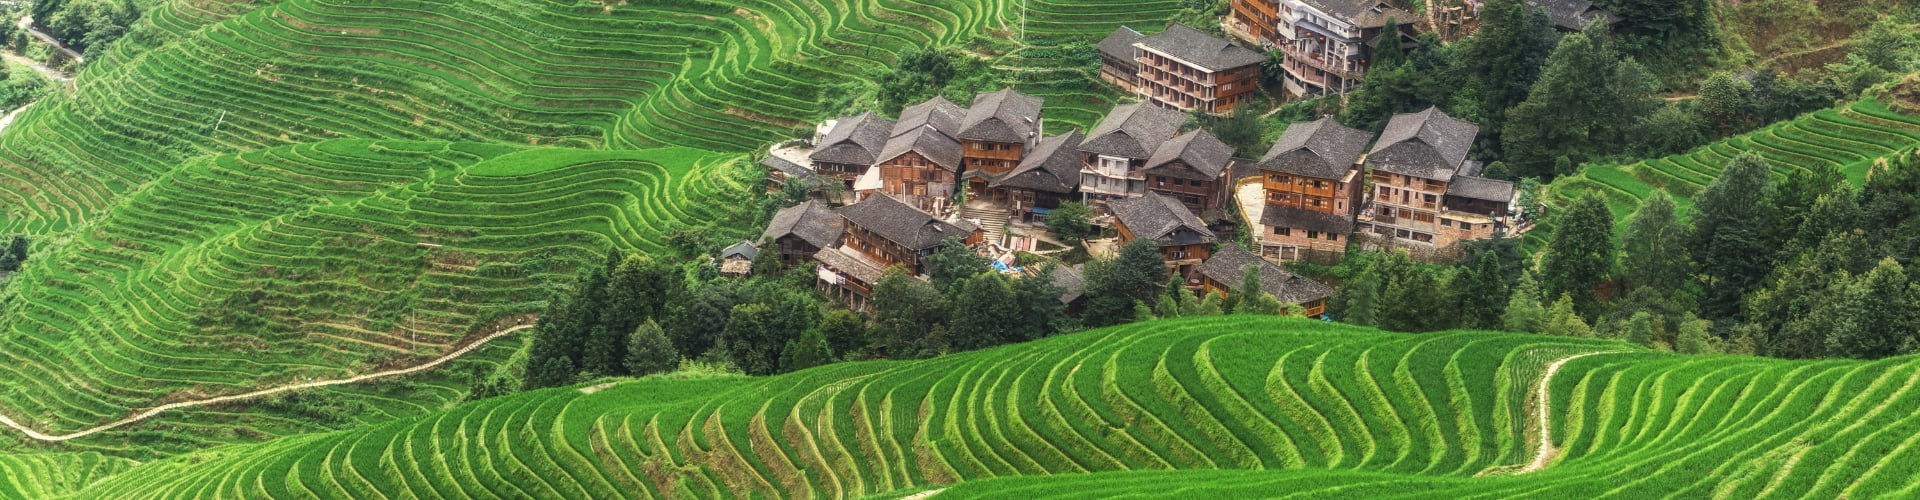 Longji Rice Terraces Tours